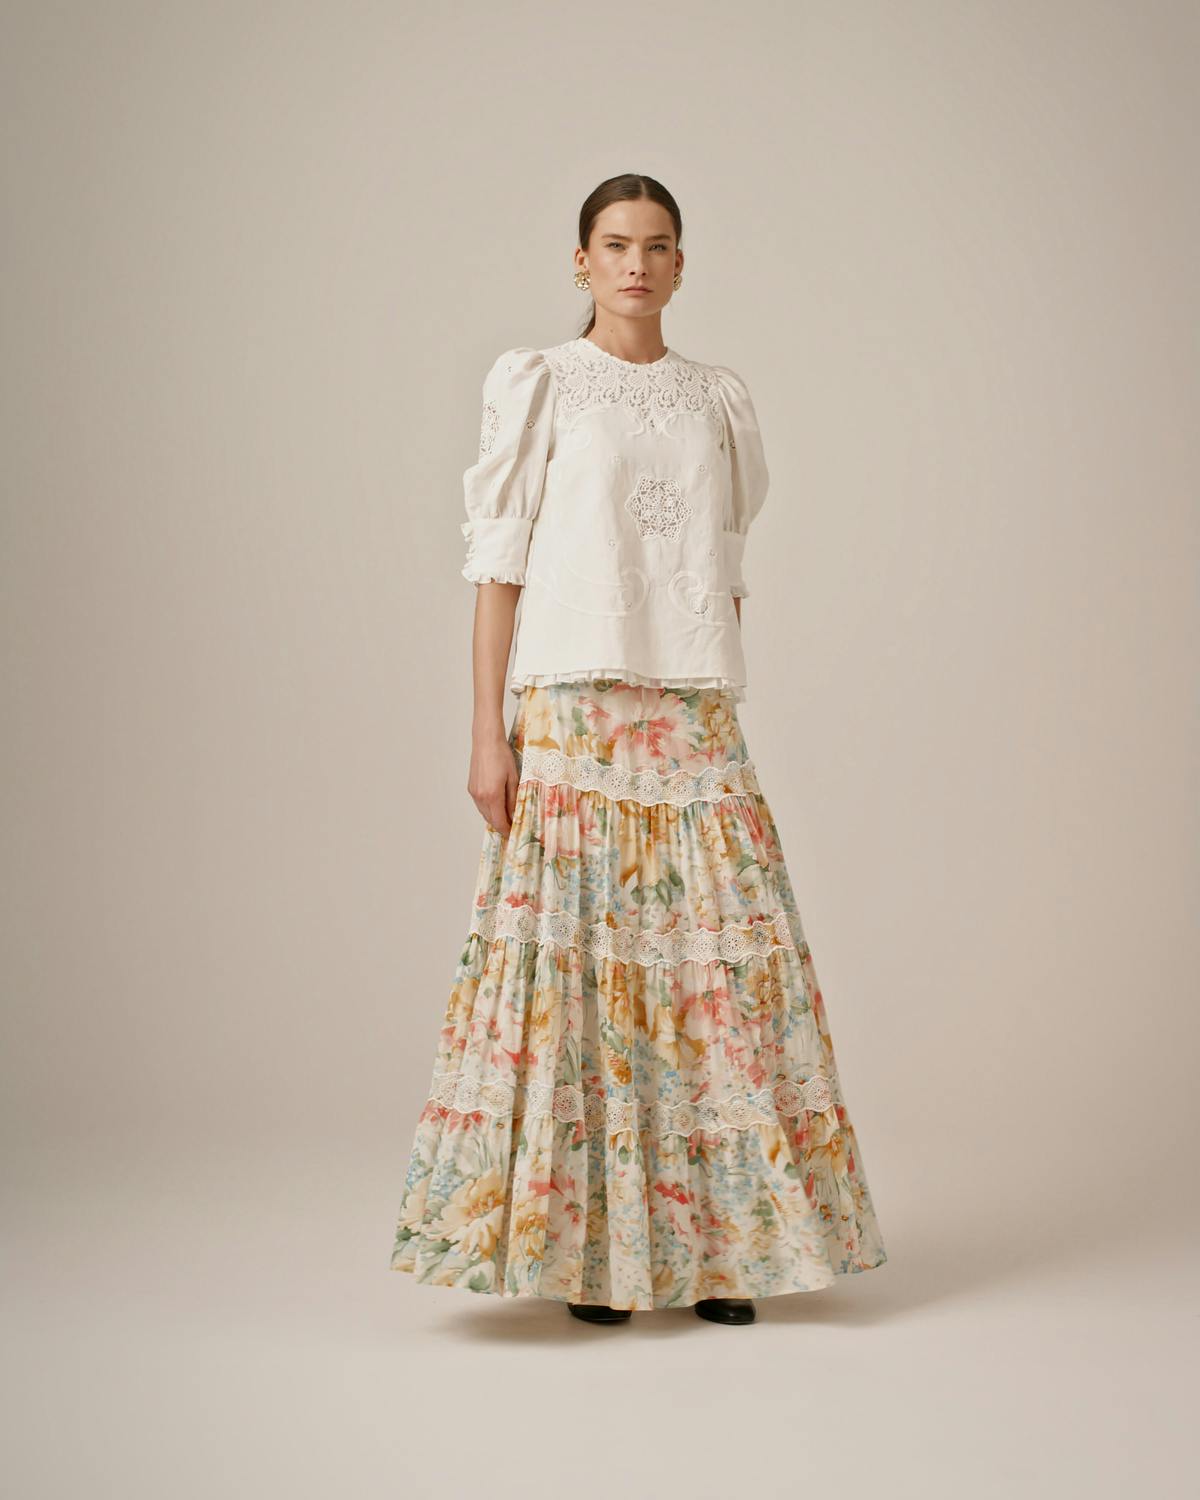 Cotton Slub Skirt, Blooming Pastels. Image #2